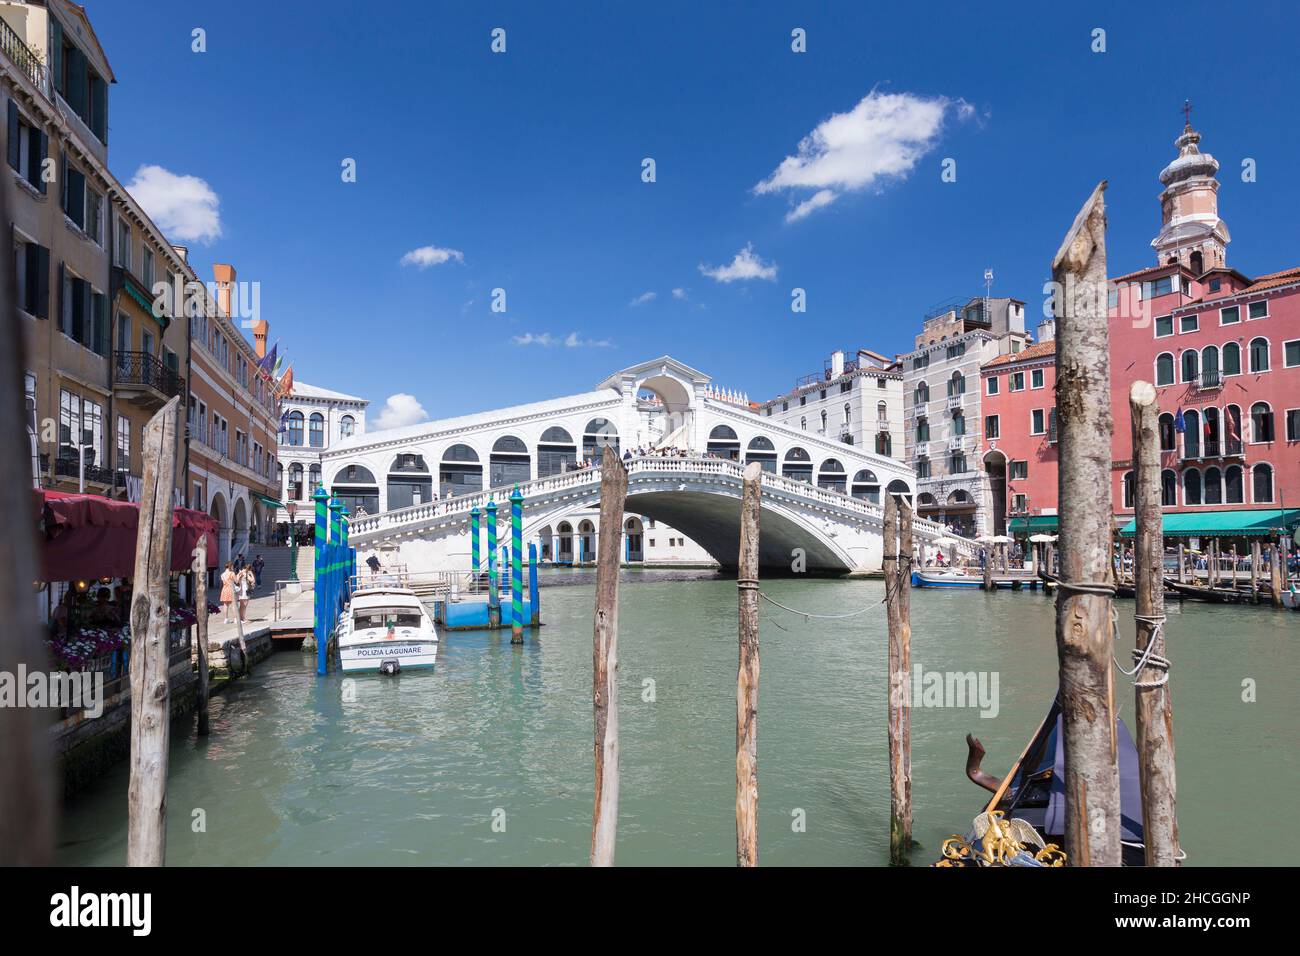 Rialto bridge, Venice, Italy Stock Photo